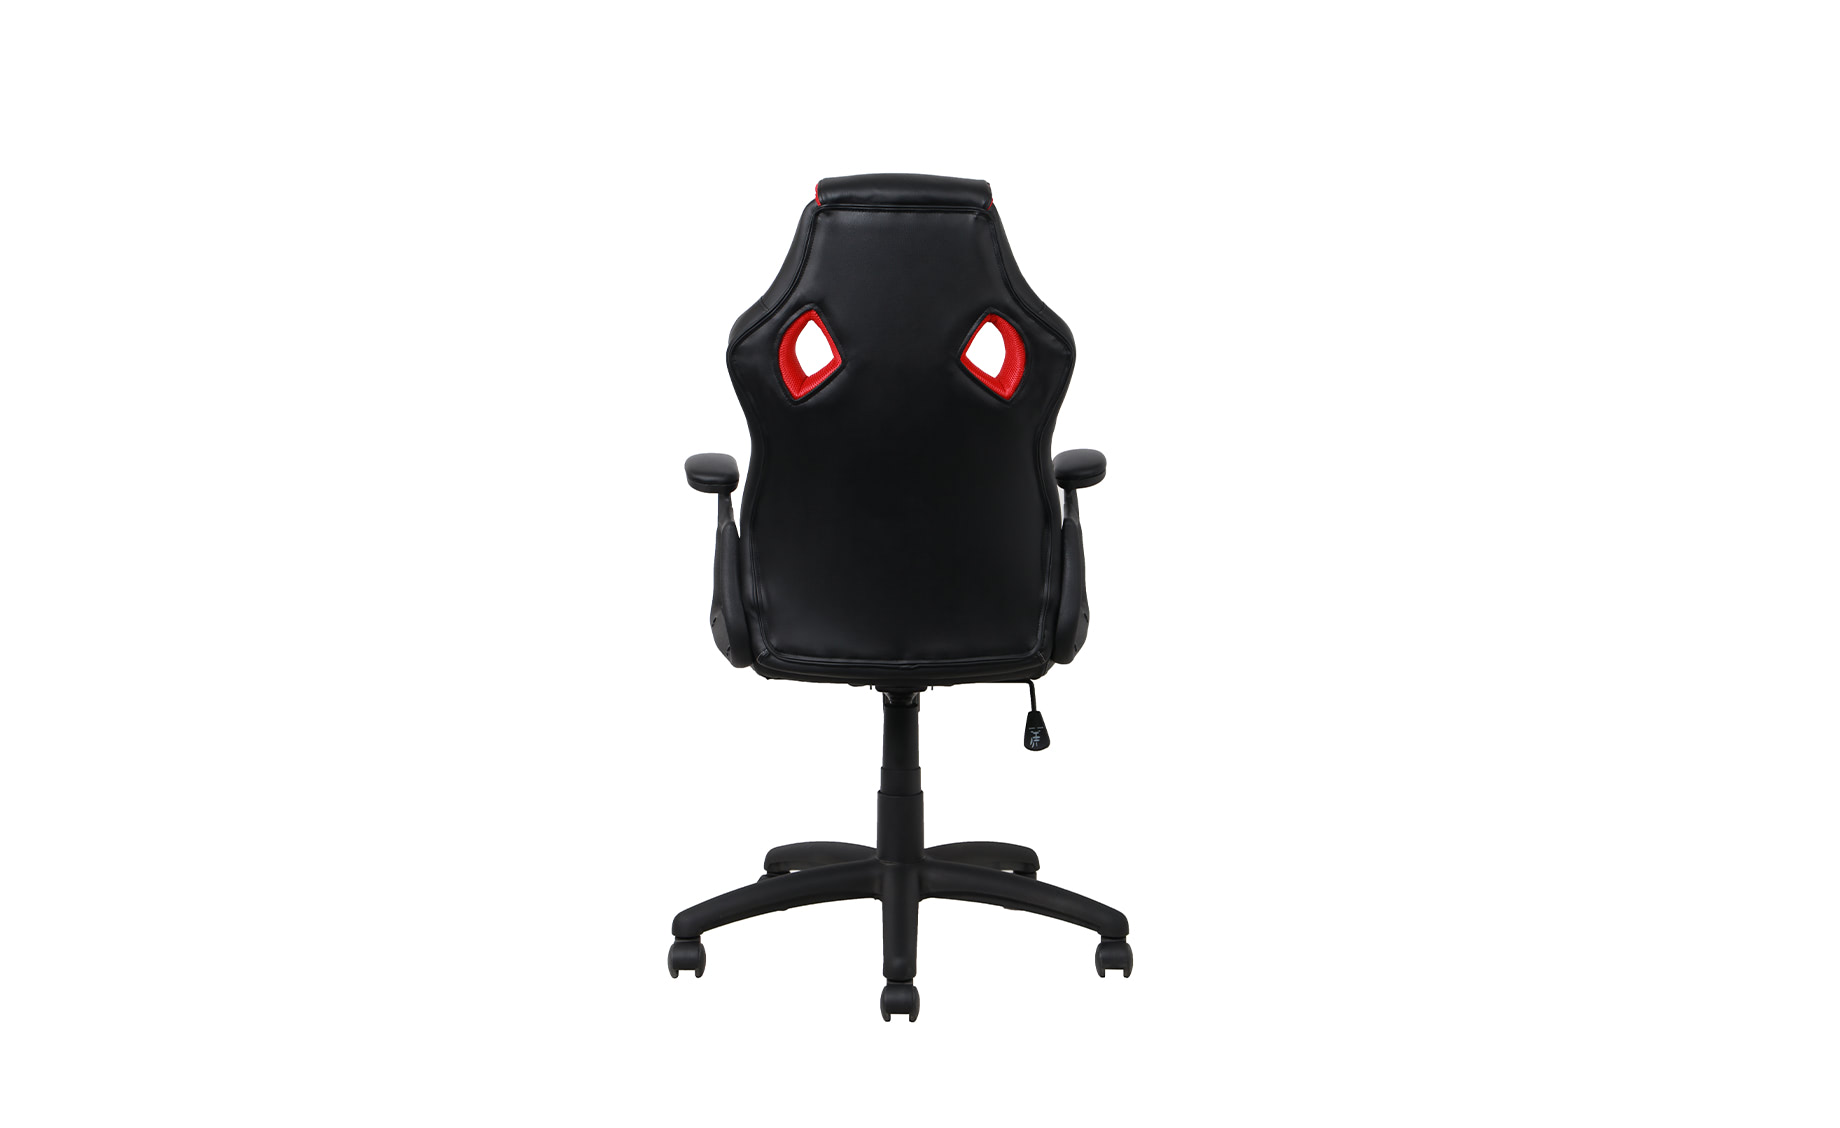 Spider kancelarijska fotelja 64,5x64,5x110-119,5cm crno/crvena